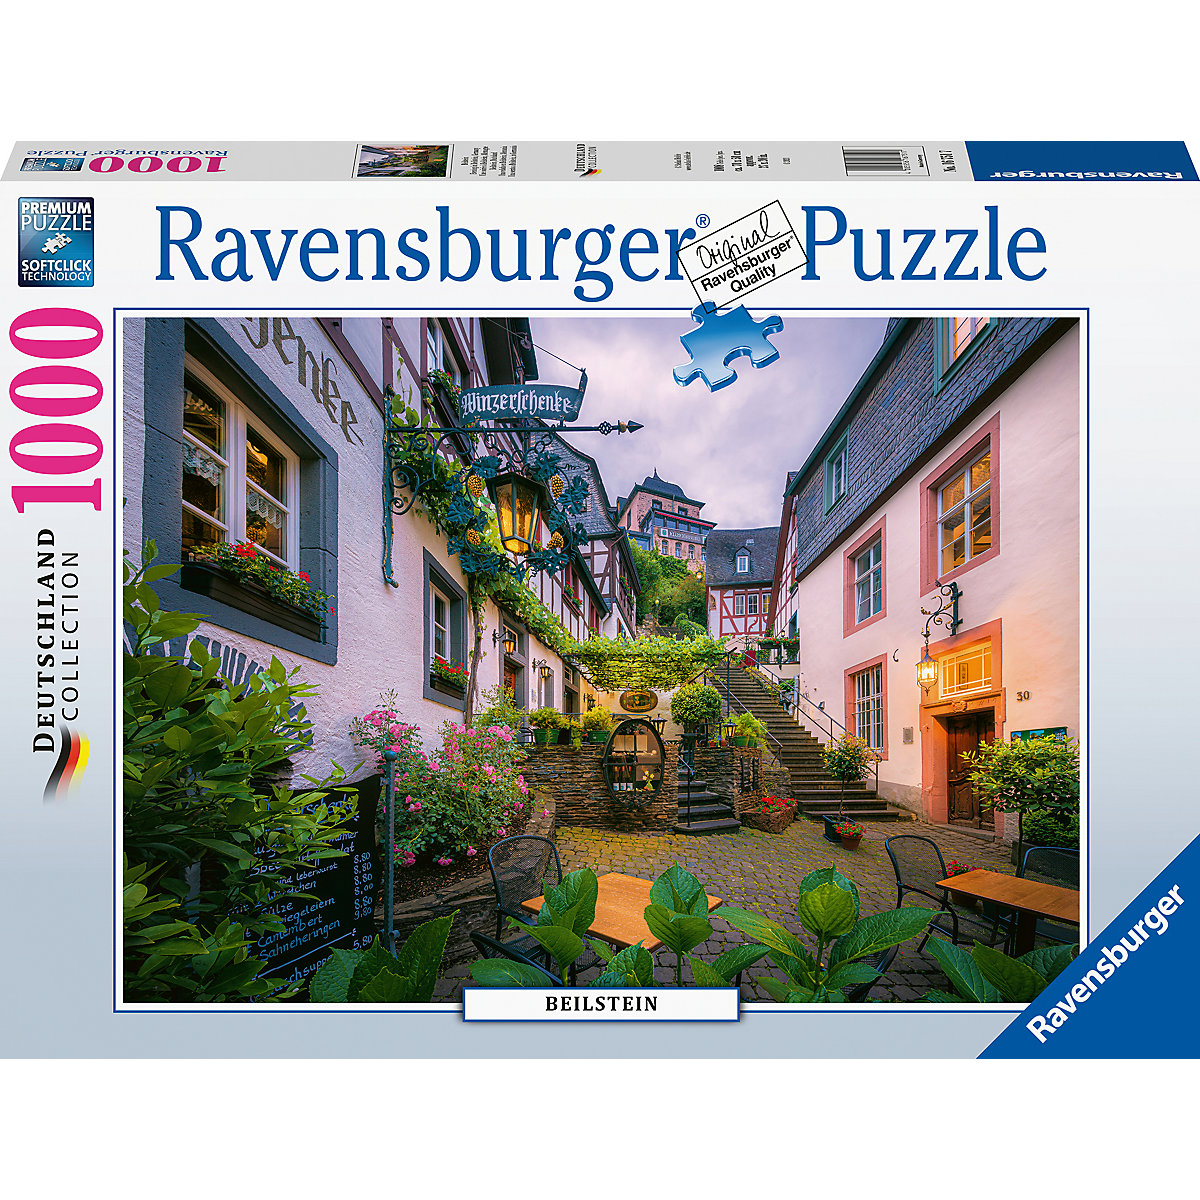 Ravensburger Puzzle 1000 Teile Beilstein